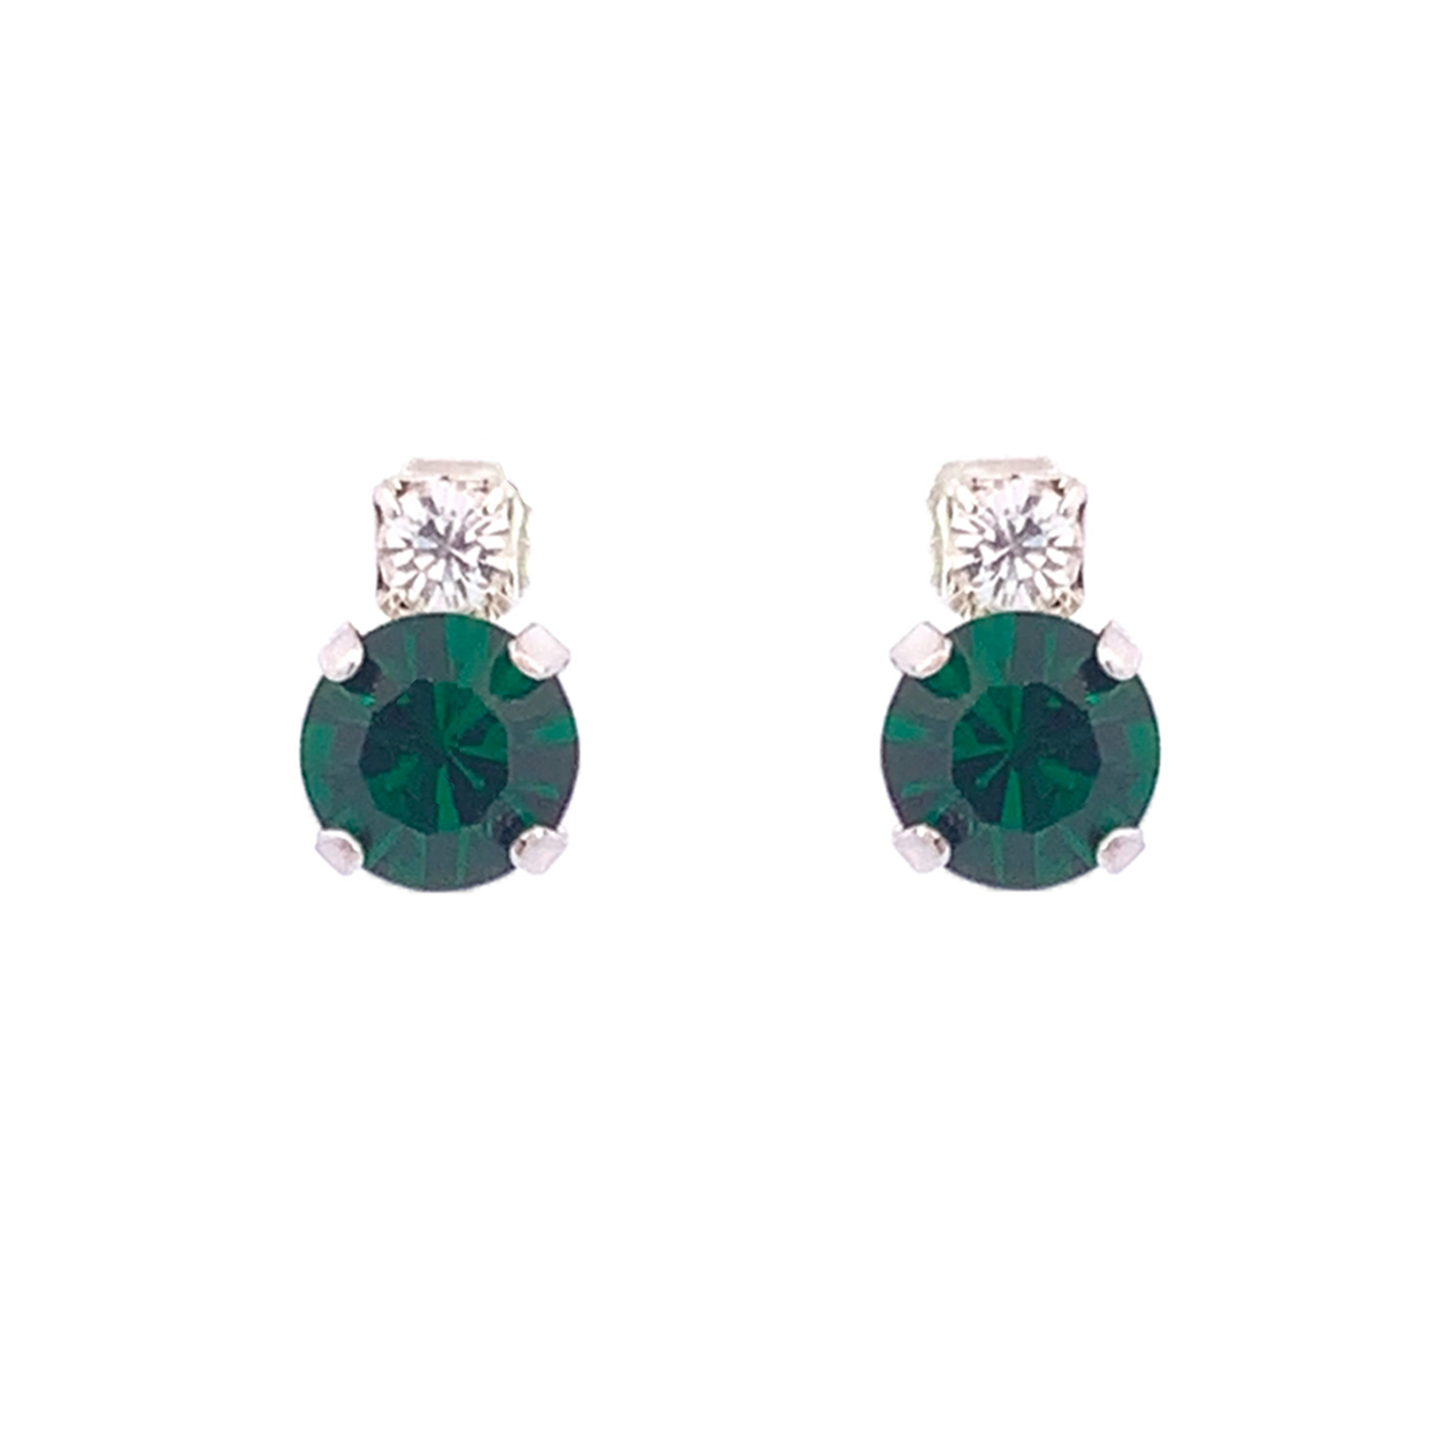 Emerald stud earrings silver